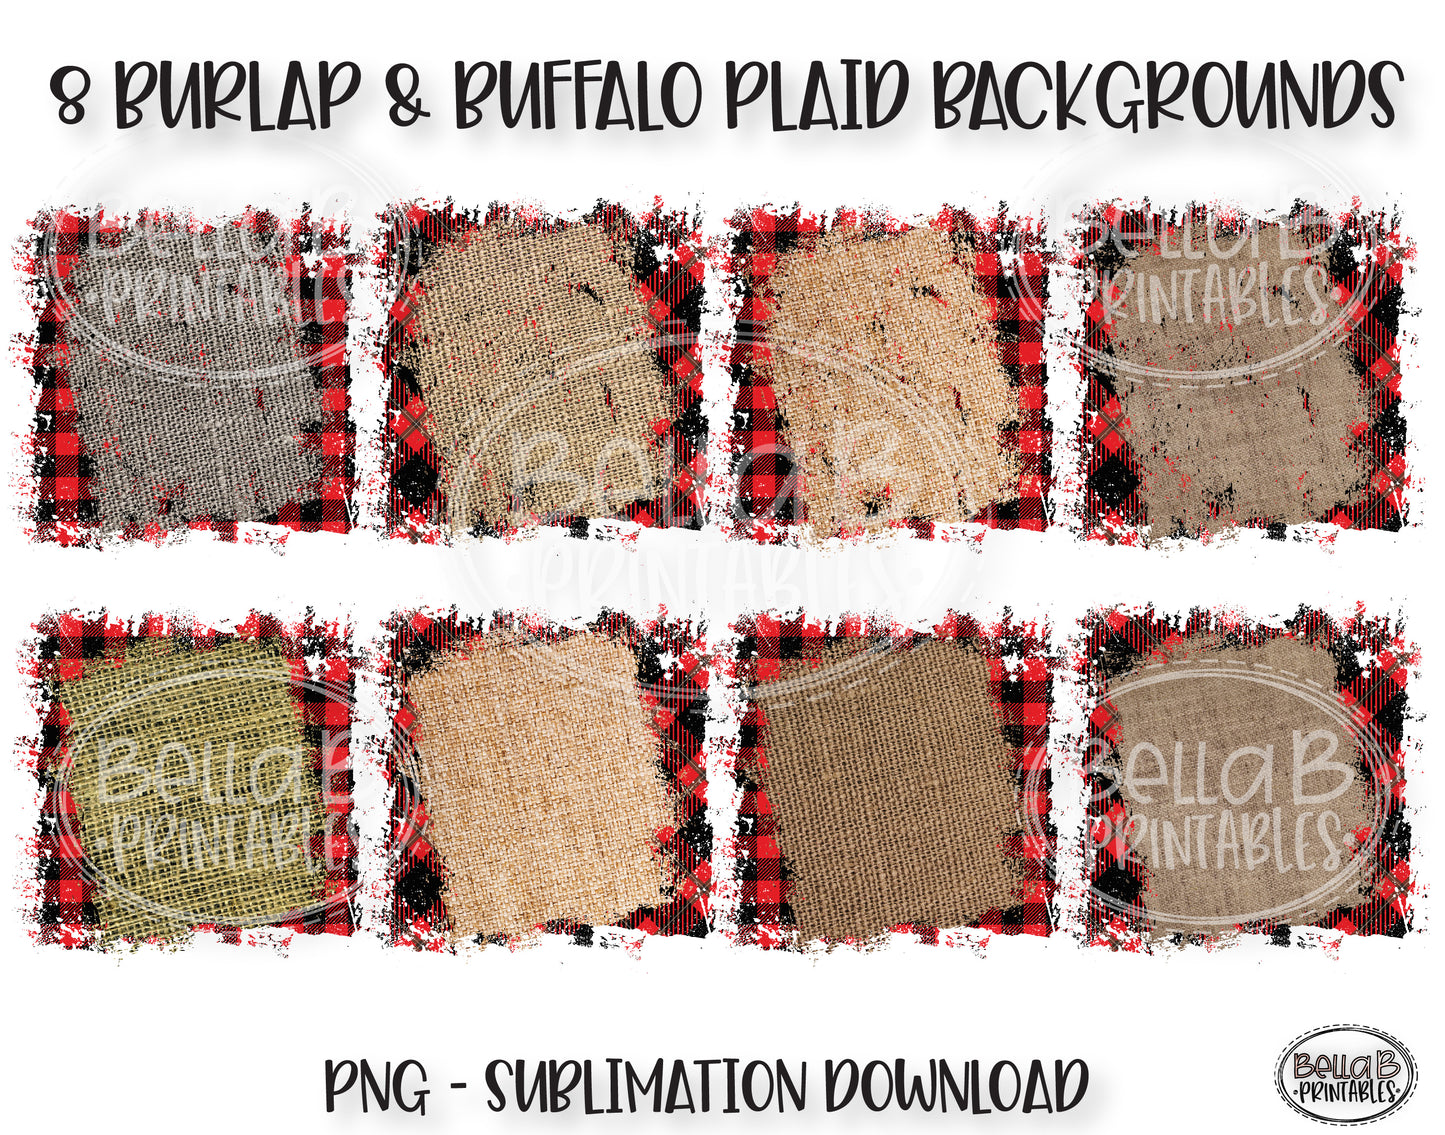 Buffalo Plaid and Burlap Sublimation Background Bundle, Backsplash